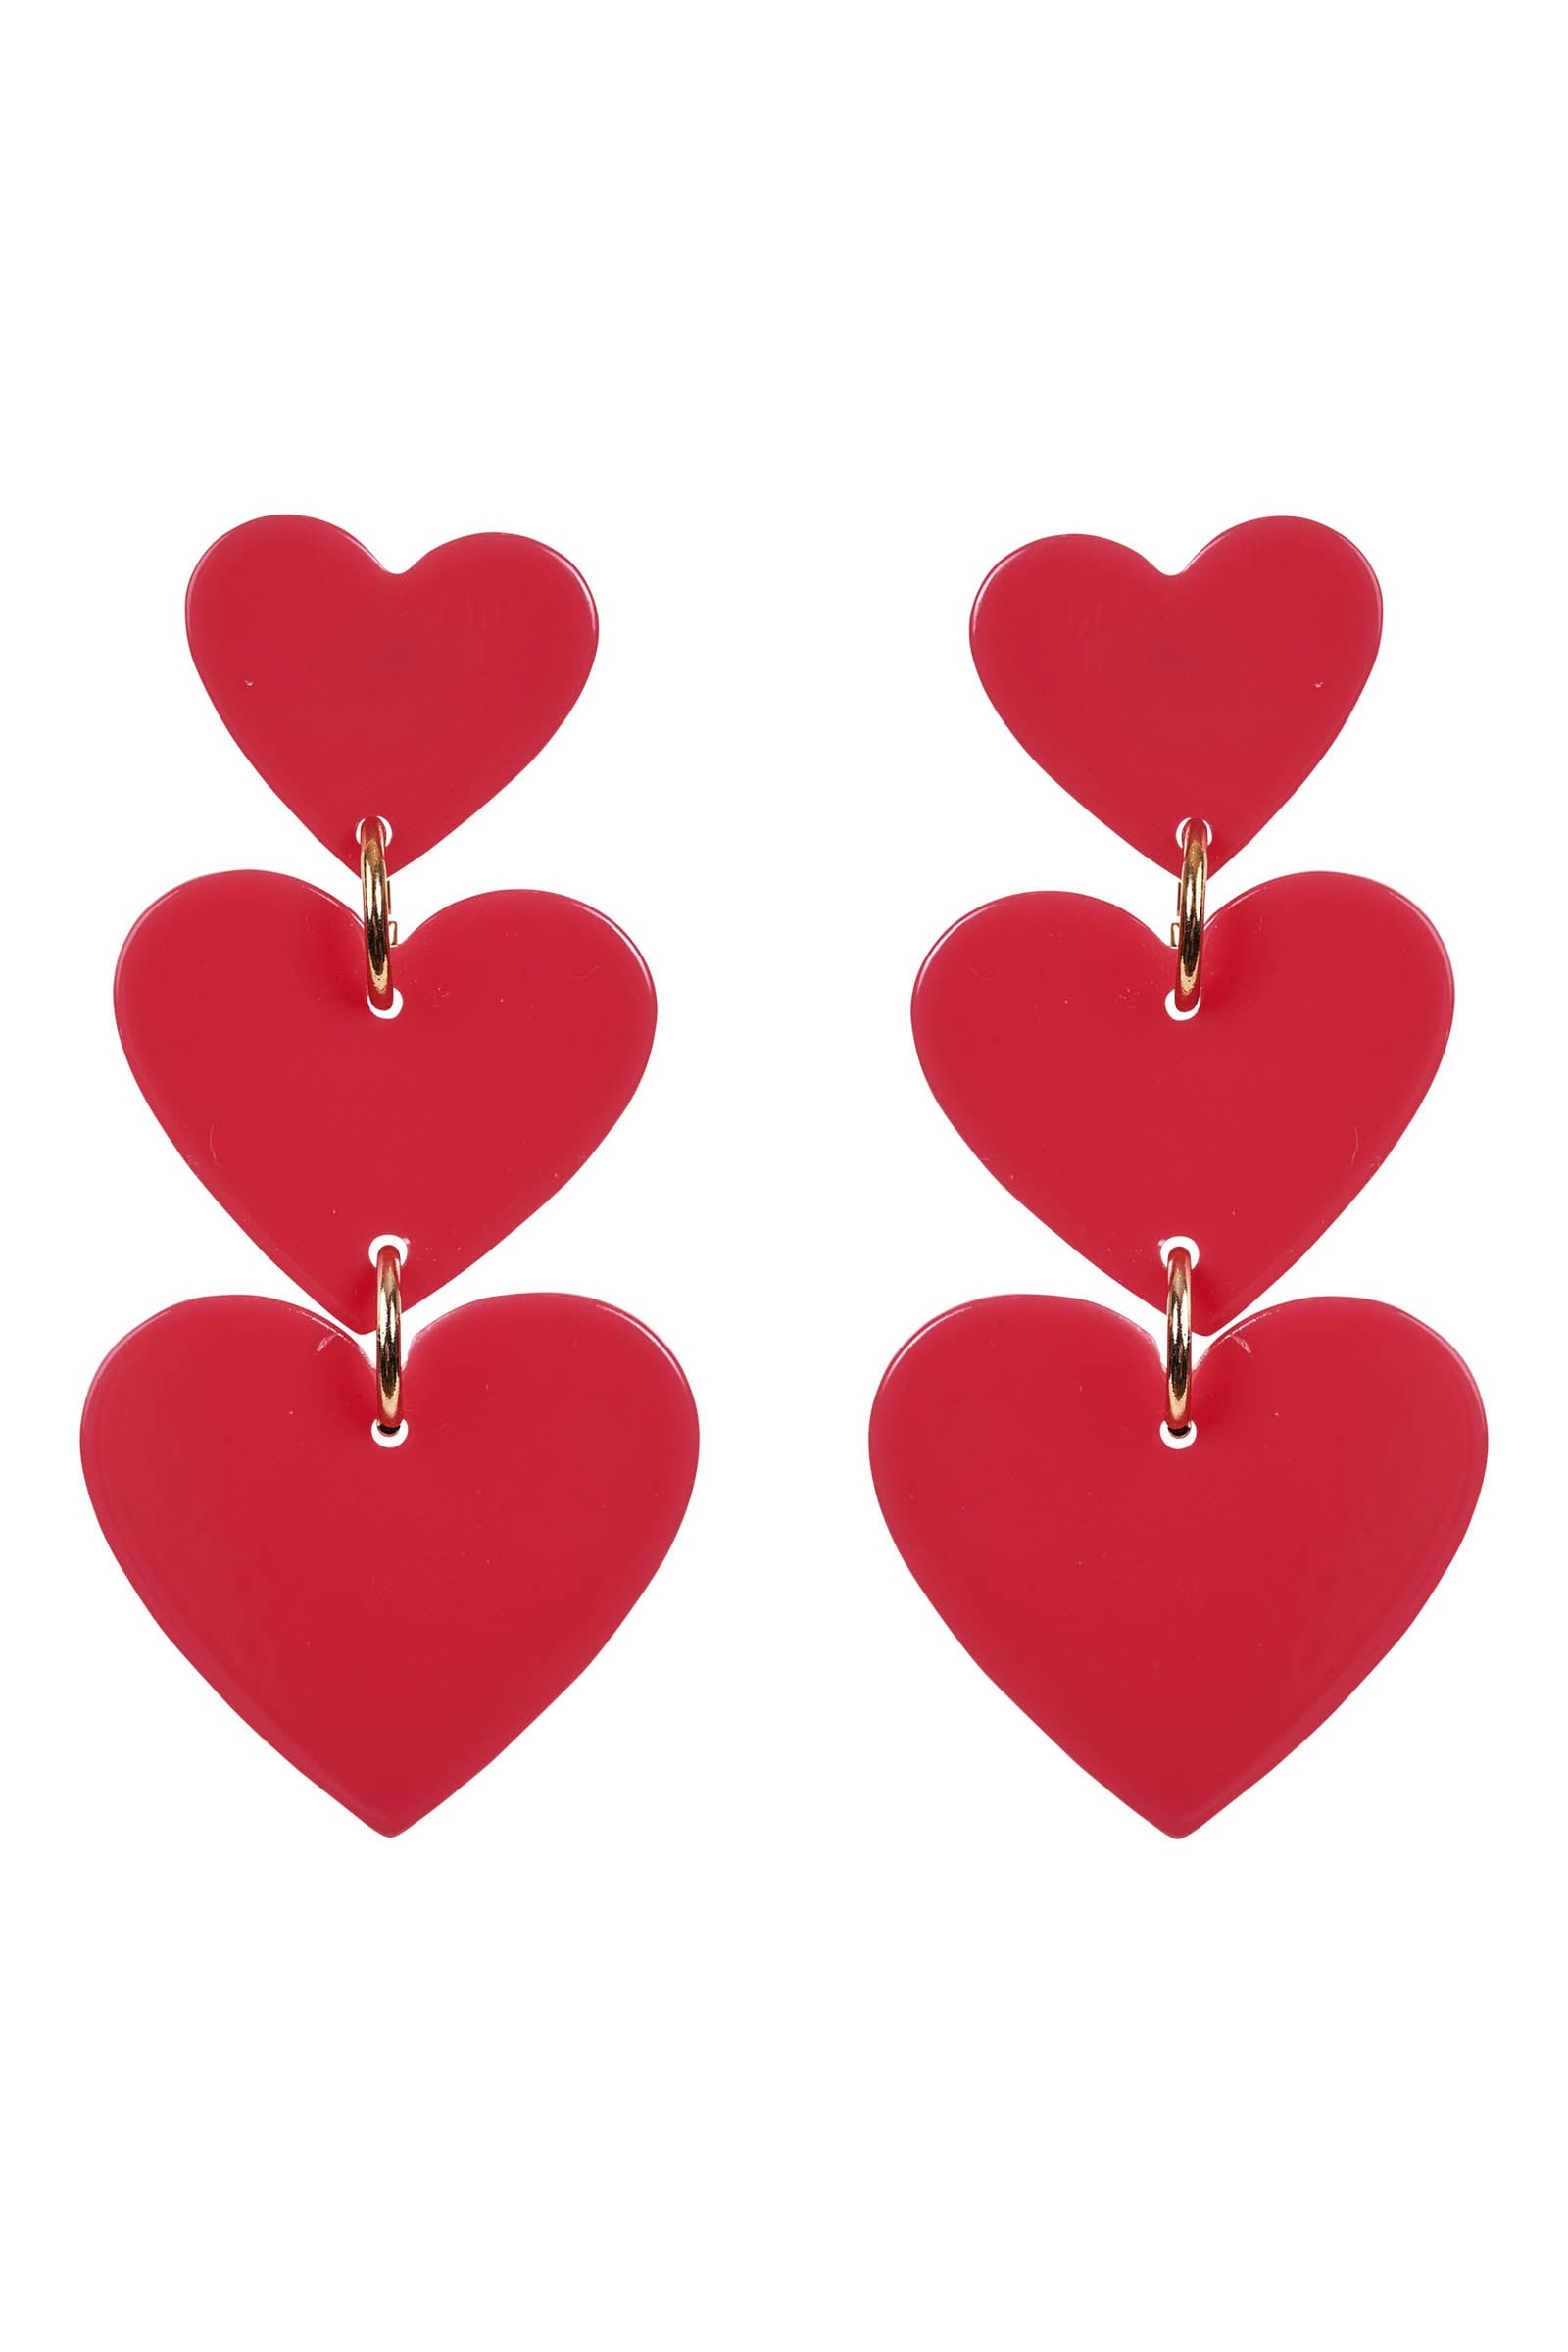 La Vie Heart Earring - Candy - eb&ive Earring